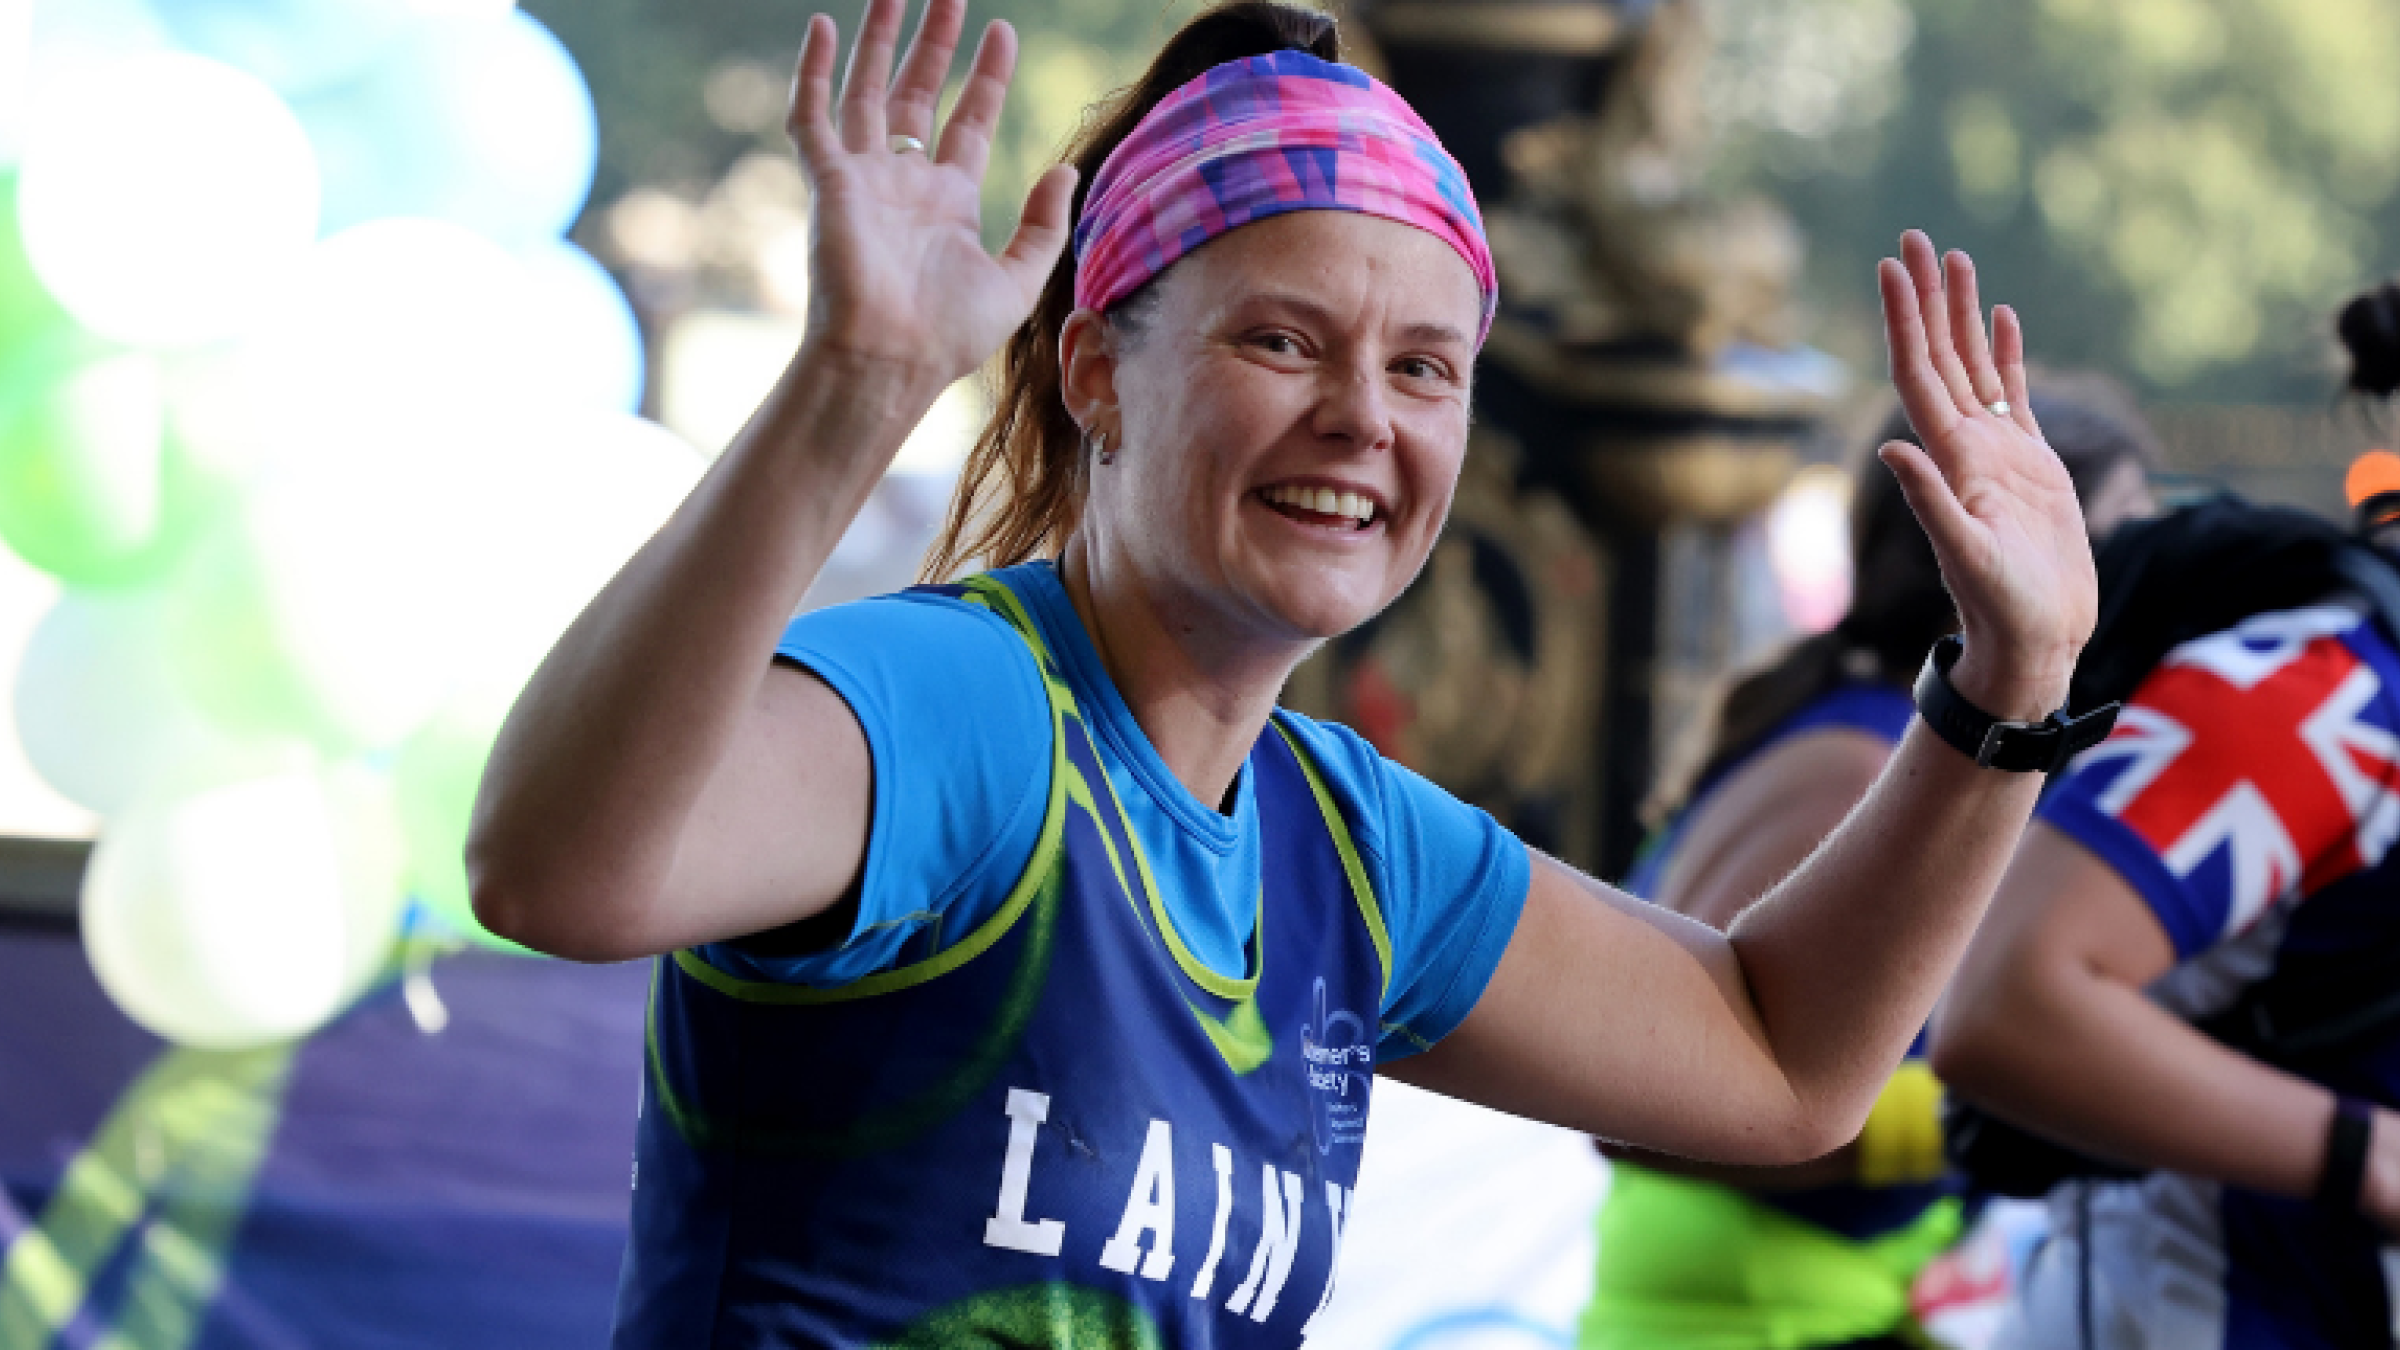 Woman waving and running at the London Marathon